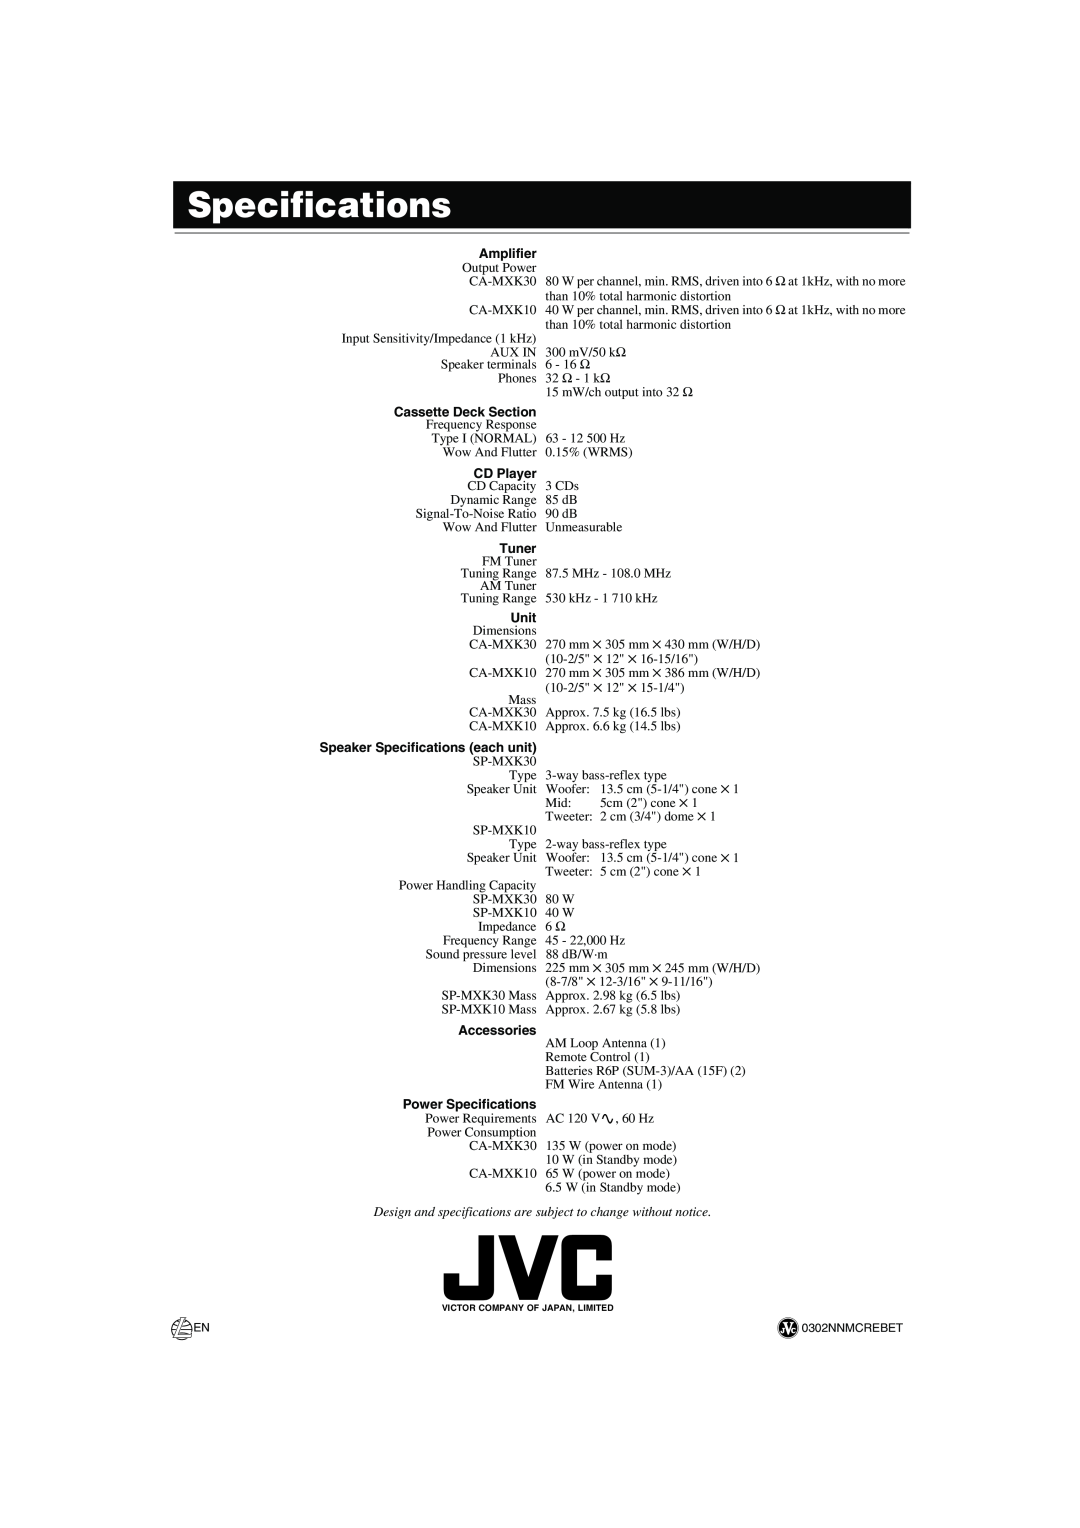 JVC MX-K30 Amplifier, Cassette Deck Section, CD Player, Tuner, Unit, Speaker Specifications each unit, Accessories 